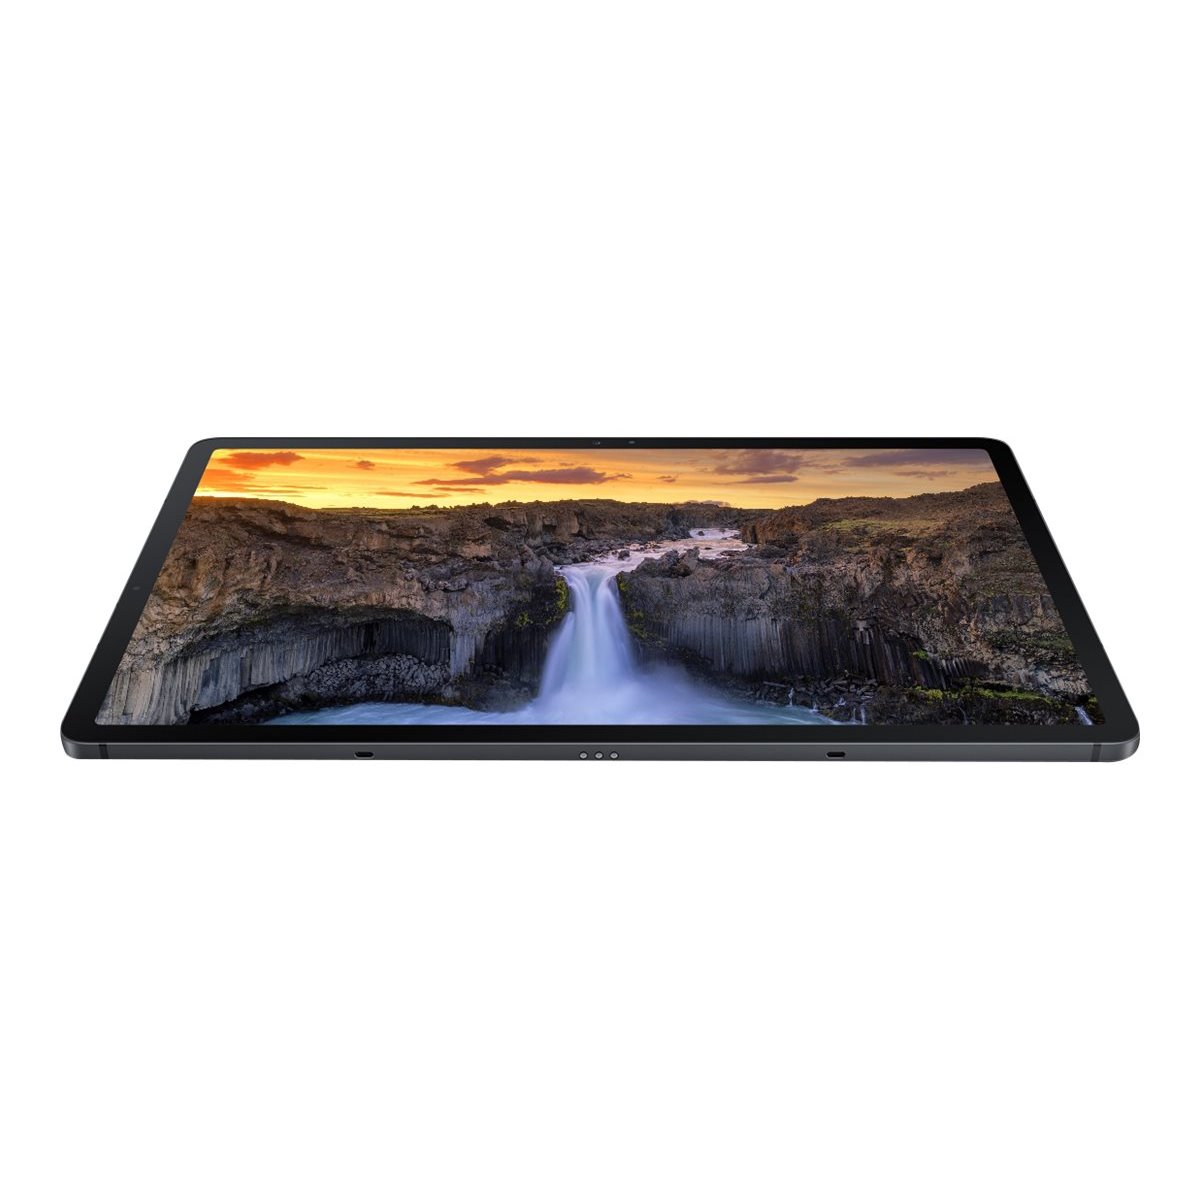 Samsung Galaxy Tab S 64 GB Black - Tablet